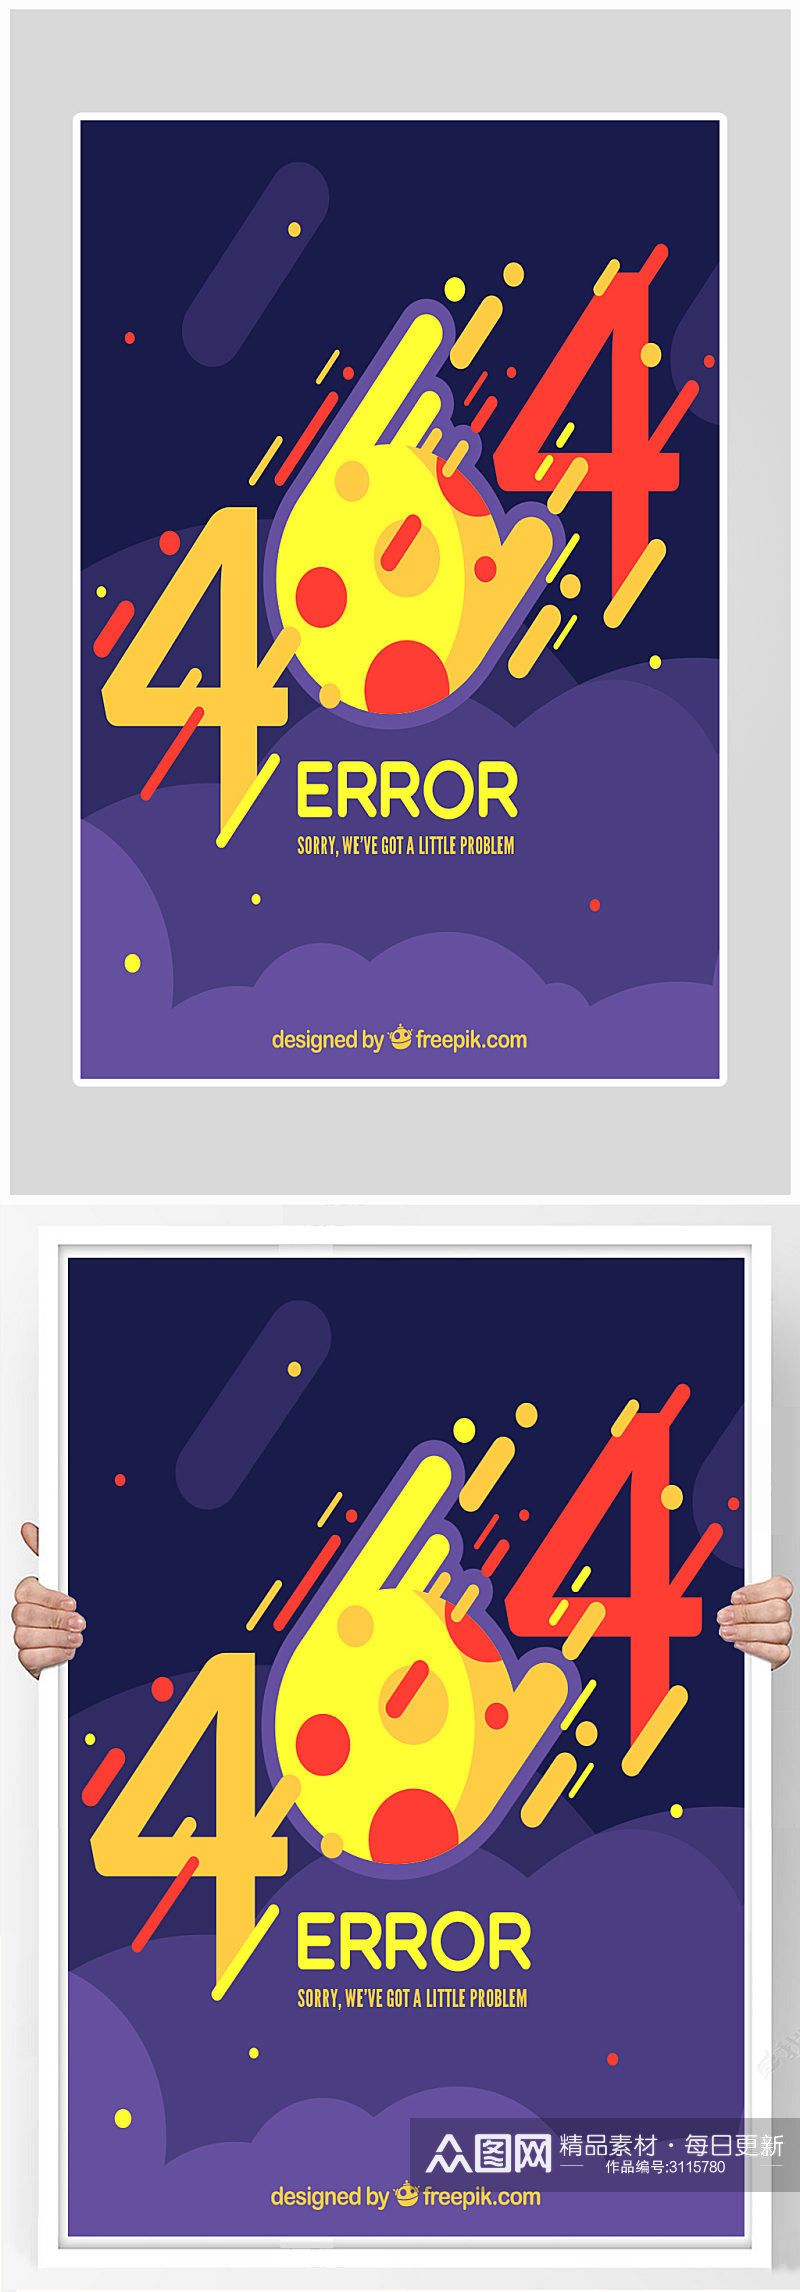 创意404网络海报设计素材